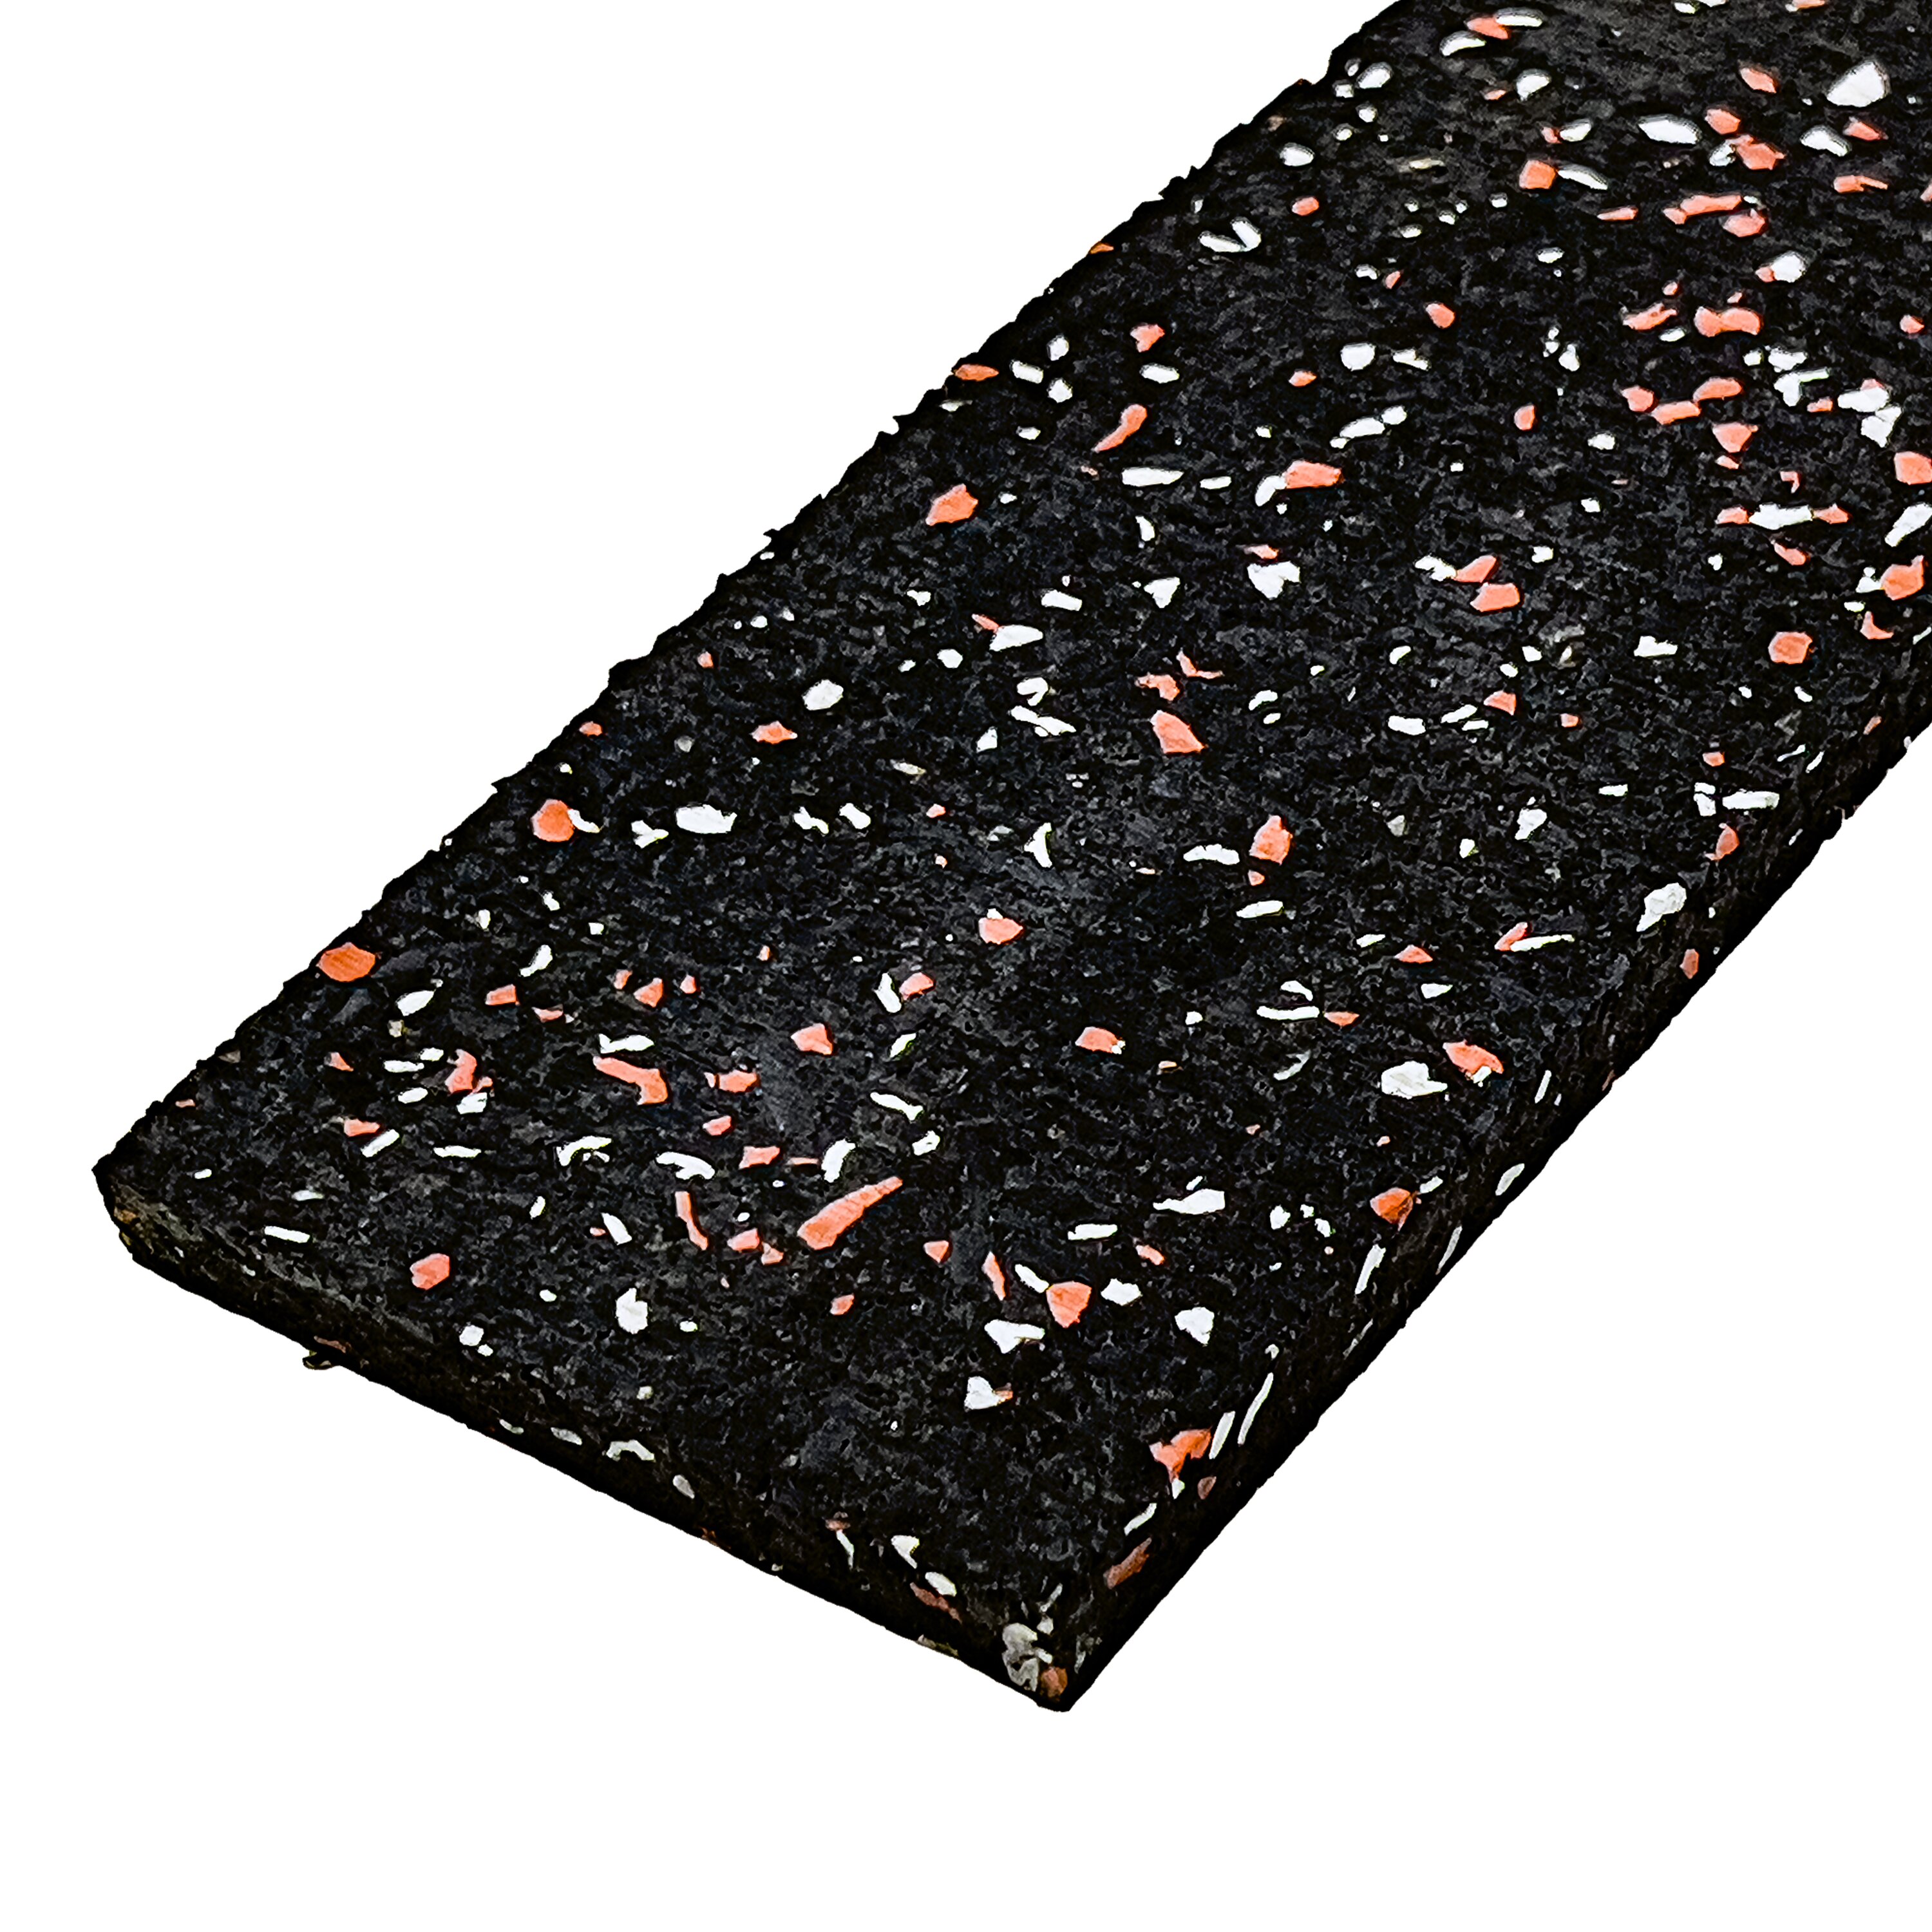 Čierno-bielo-červená gumová soklová podlahová lišta FLOMA FitFlo IceFlo - dĺžka 200 cm, šírka 7 cm, hrúbka 0,8 cm